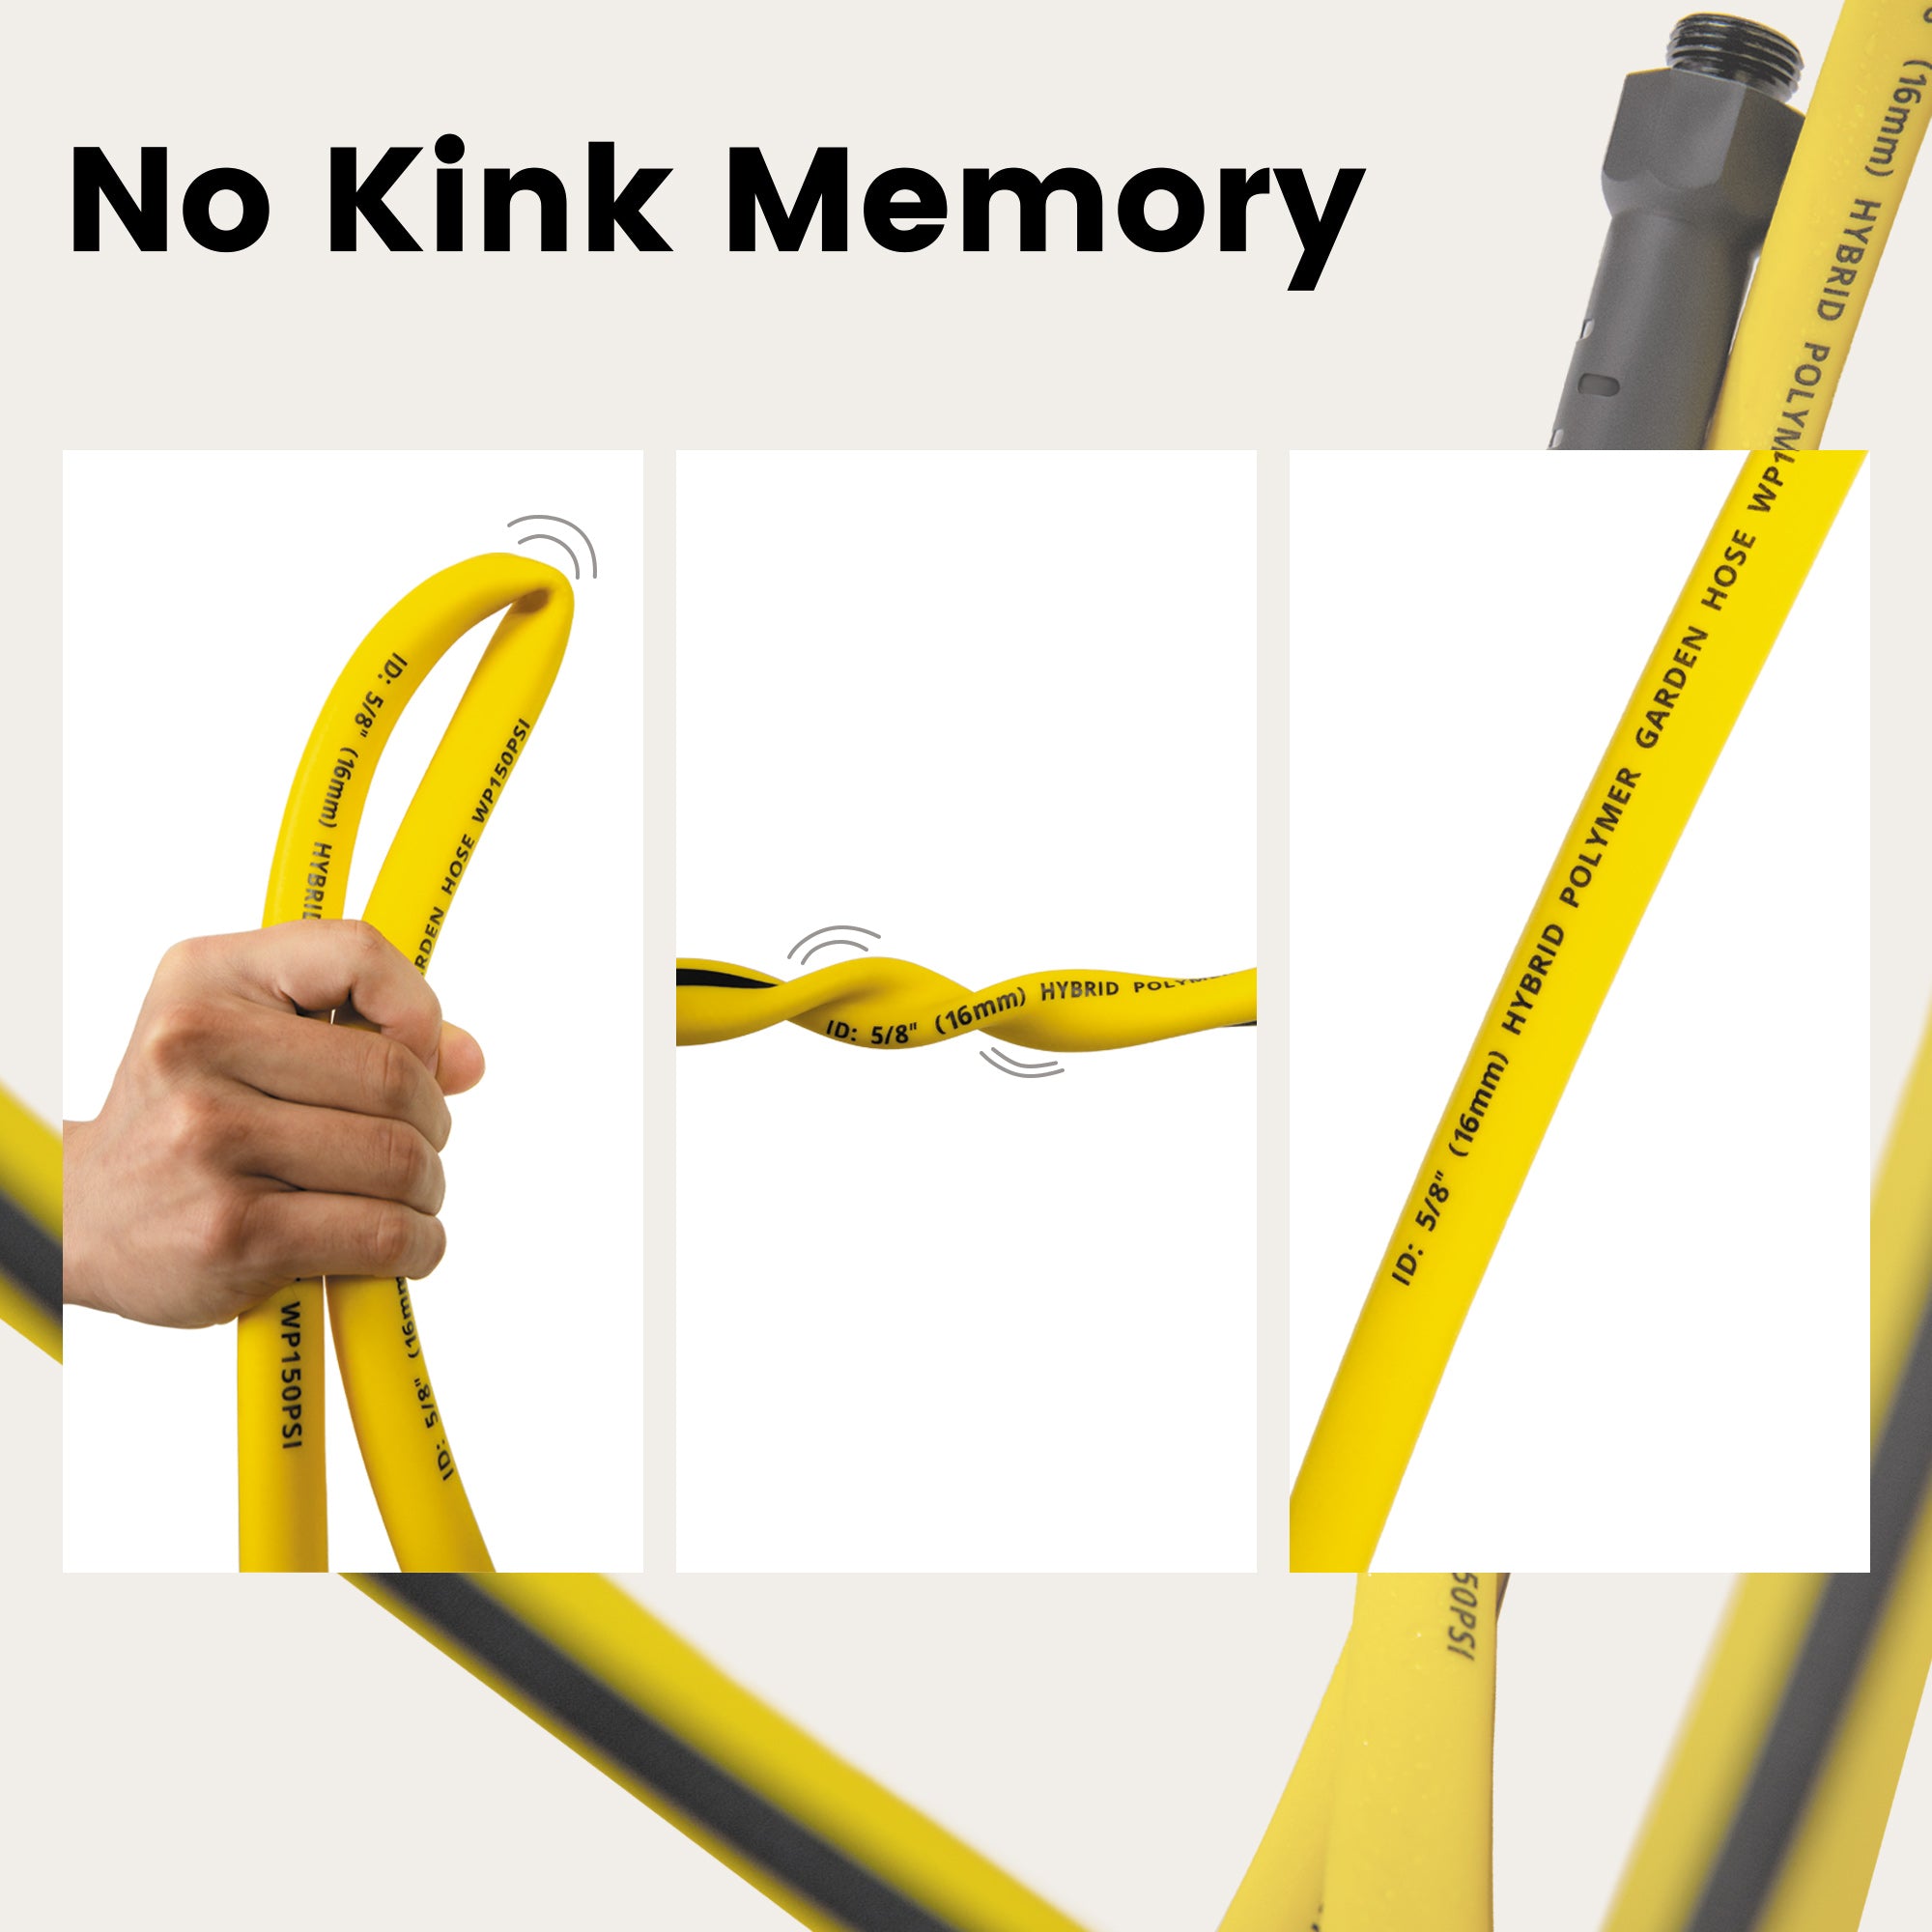 50 ft garden hose with no kink memory